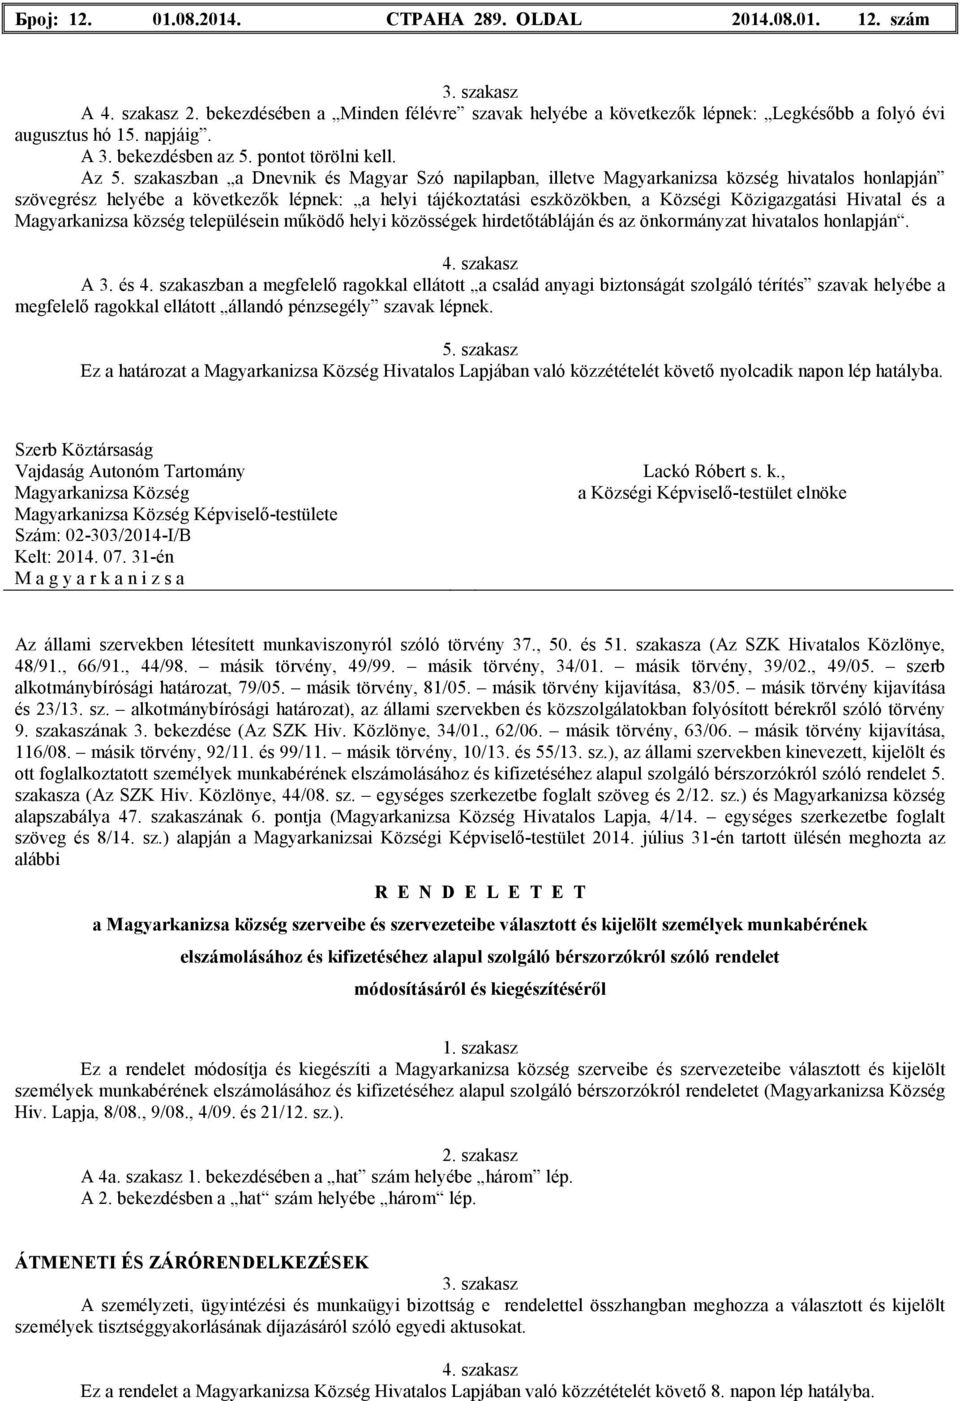 szakaszban a Dnevnik és Magyar Szó napilapban, illetve hivatalos honlapján szövegrész helyébe a következık lépnek: a helyi tájékoztatási eszközökben, a Községi Közigazgatási Hivatal és a településein